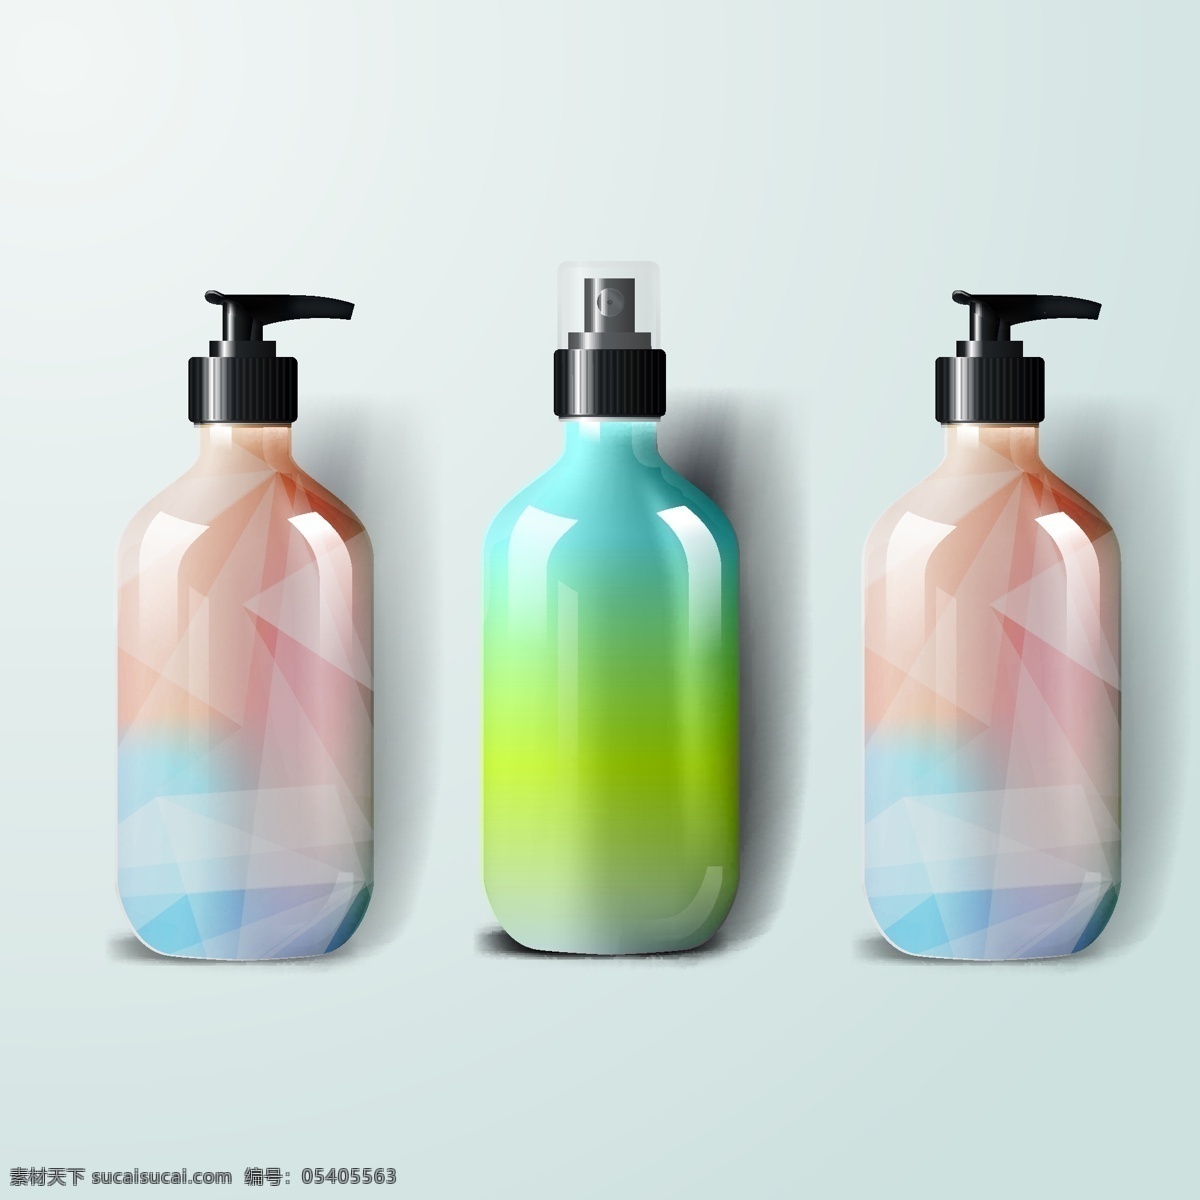 洗头水 沐浴露瓶 洗头水瓶 包装设计 产品设计 瓶外包装设计 矢量